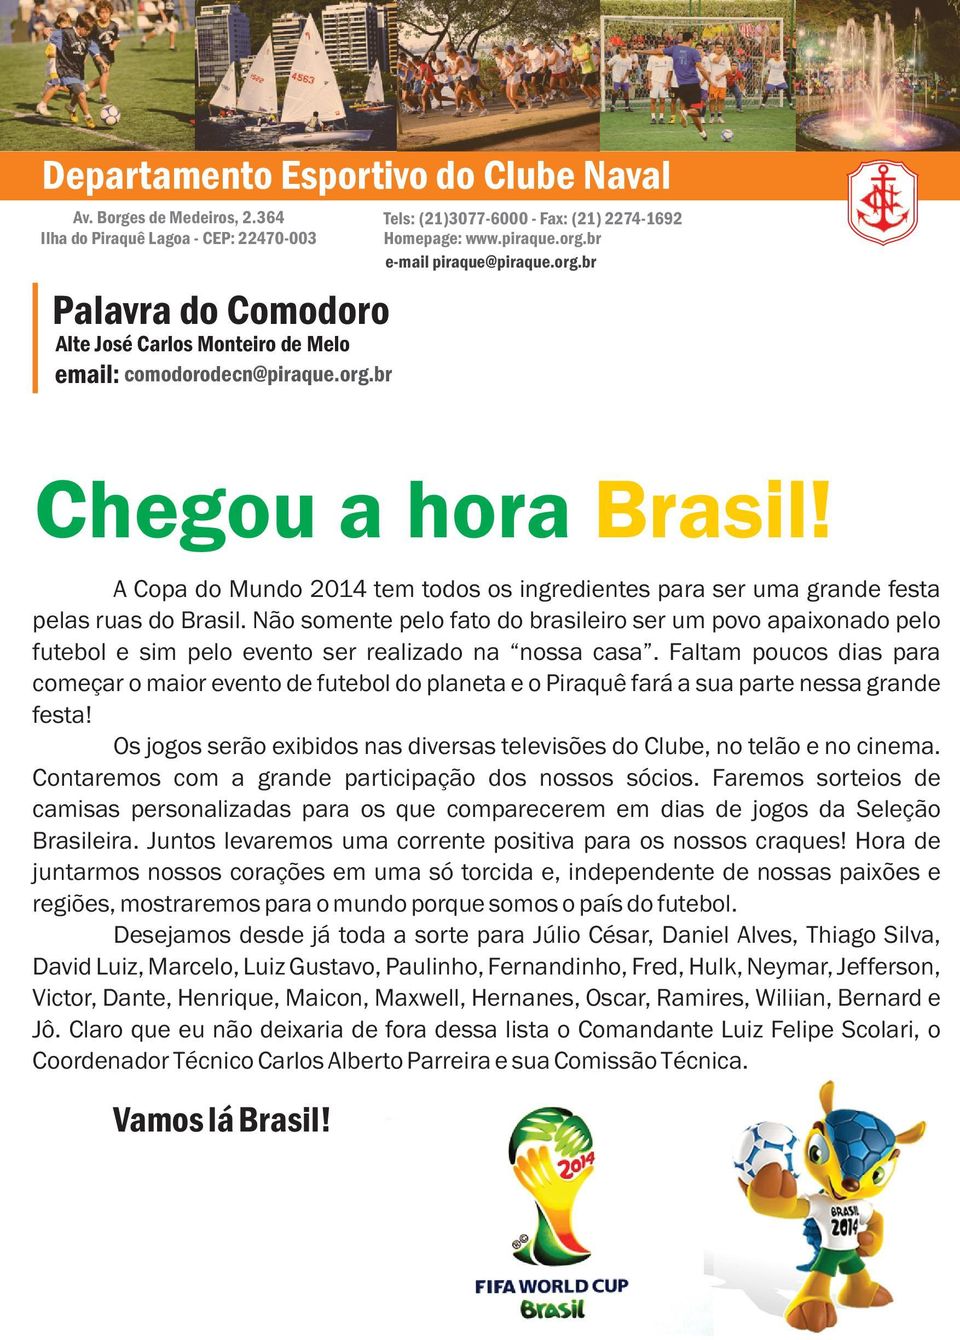 Não somente pelo fato do brasileiro ser um povo apaixonado pelo futebol e sim pelo evento ser realizado na nossa casa.